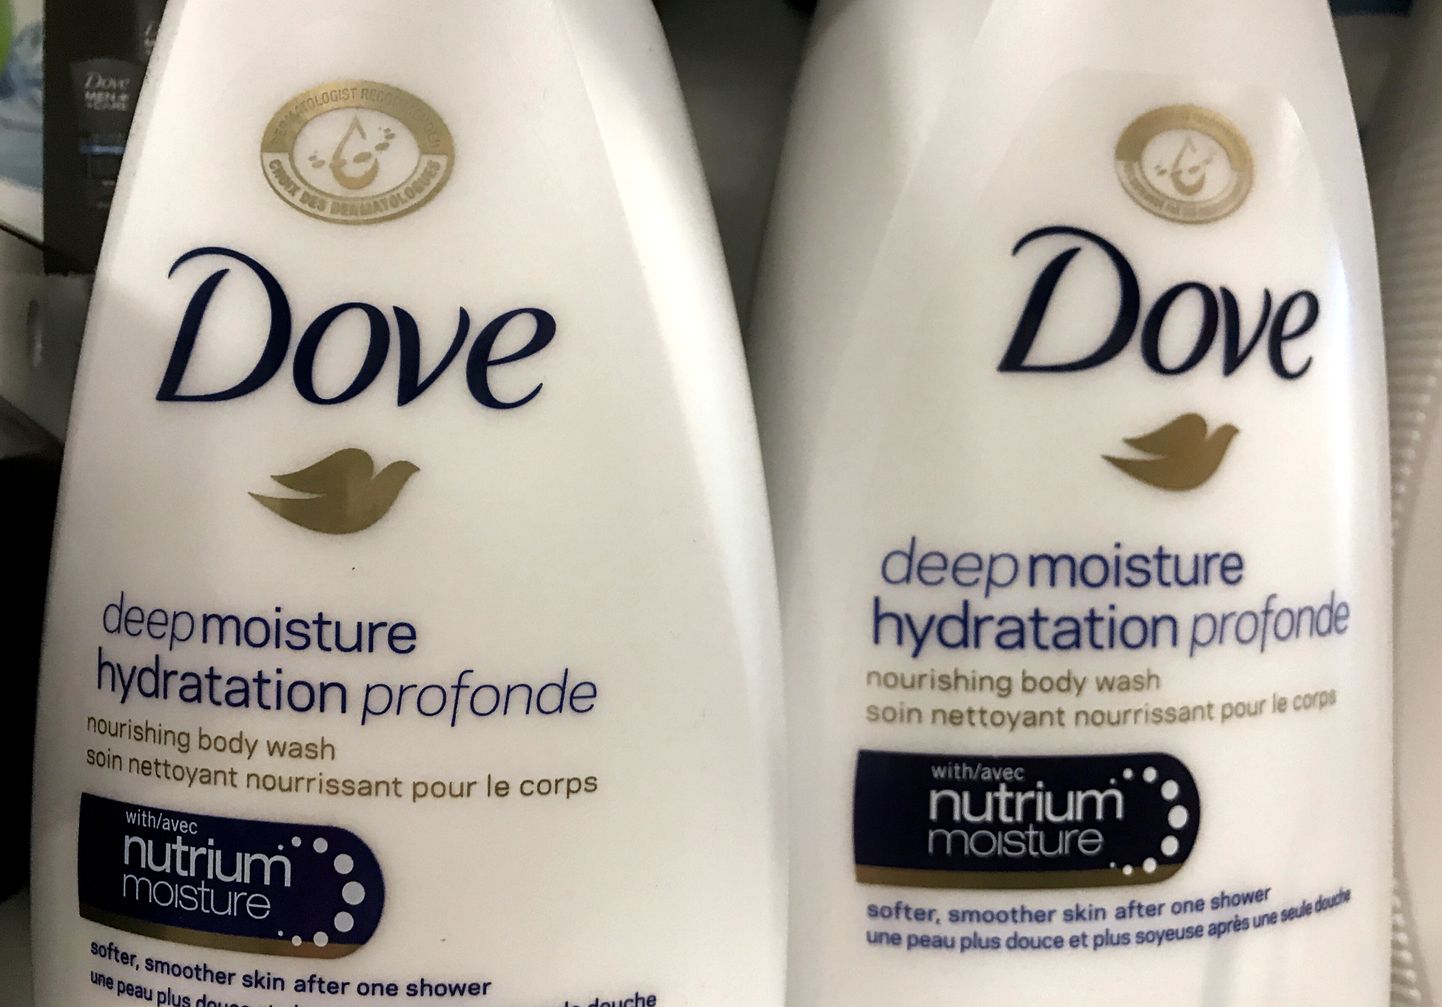 Unileveri üks tuntumaid brände on seep Dove.